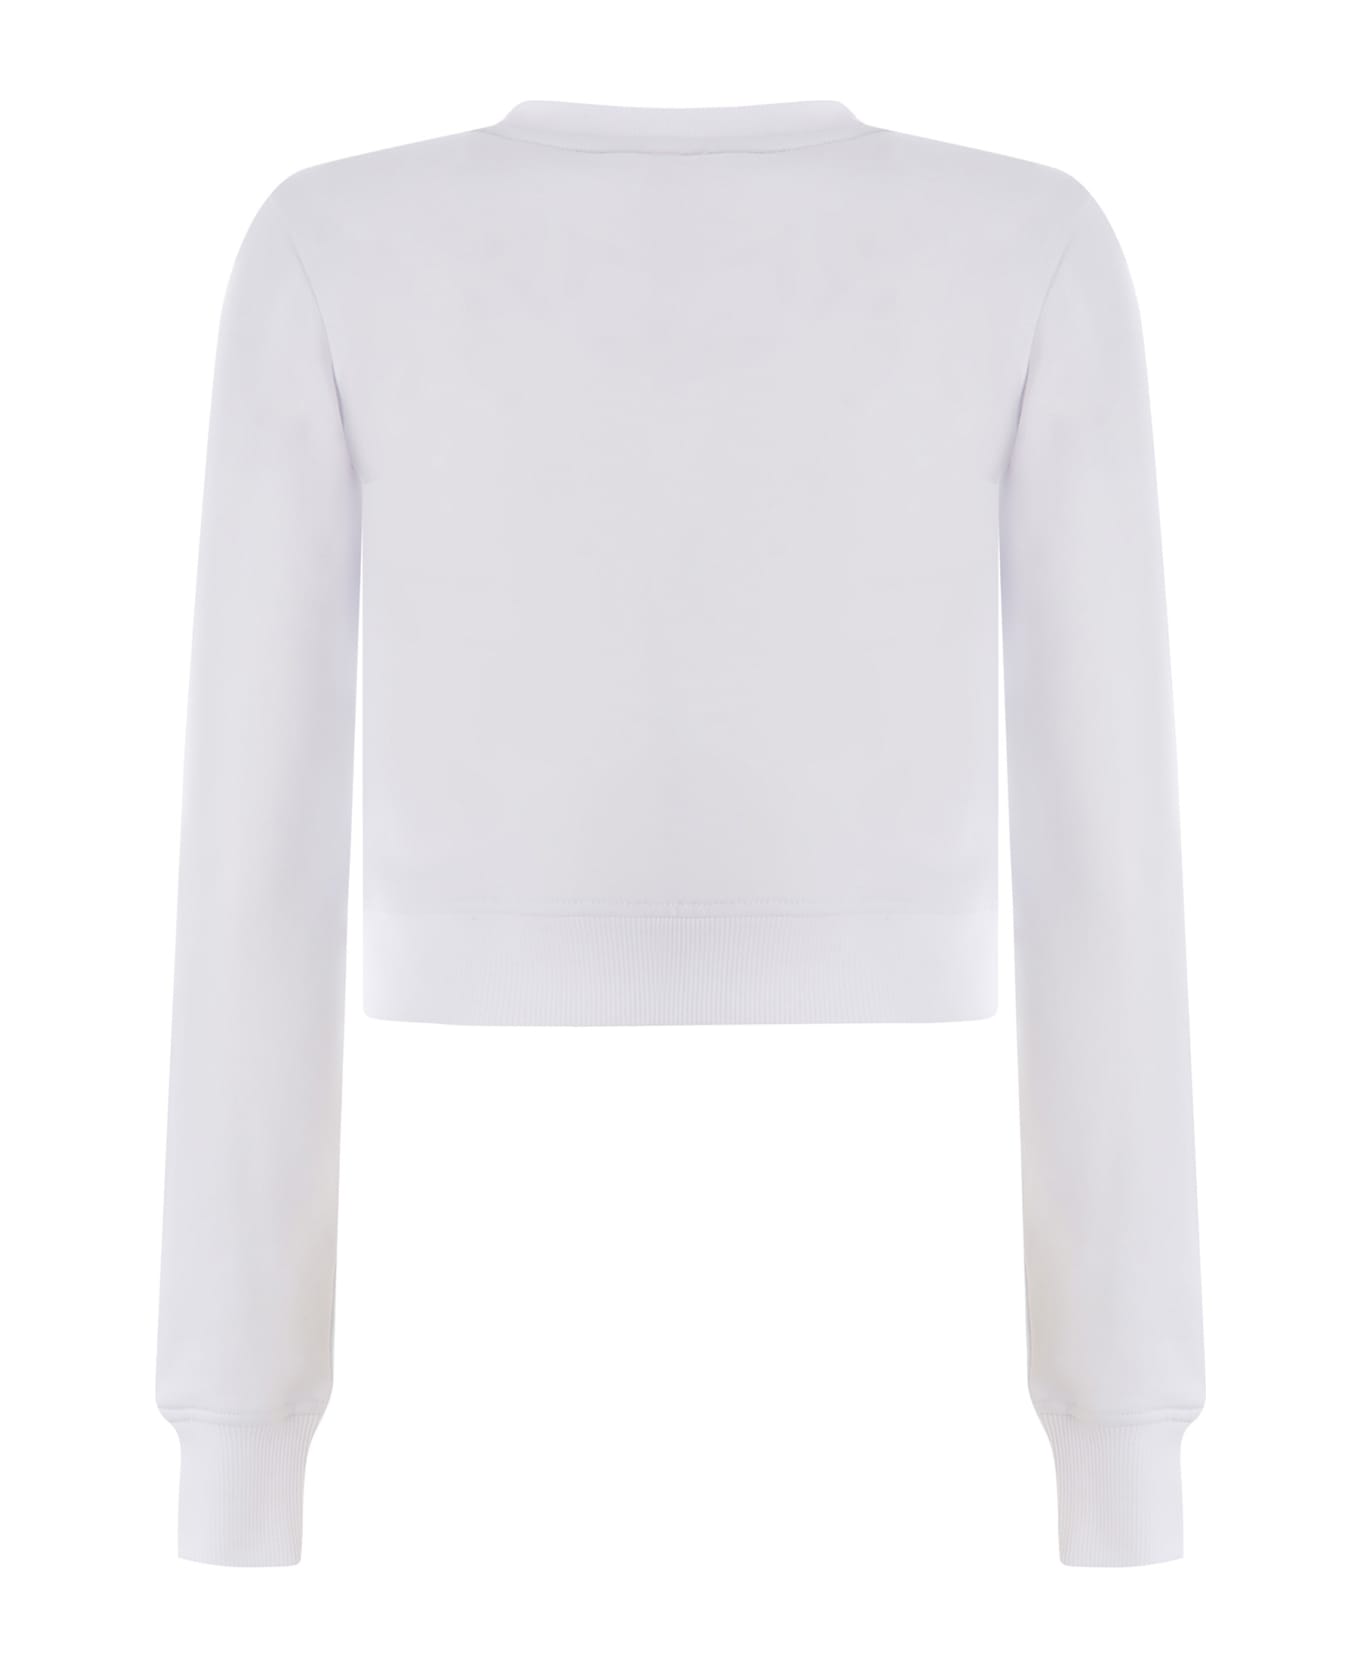 Diesel Sweatshirt Diesel "f-slimmy-od" Made Of Cotton Blend - Bianco フリース